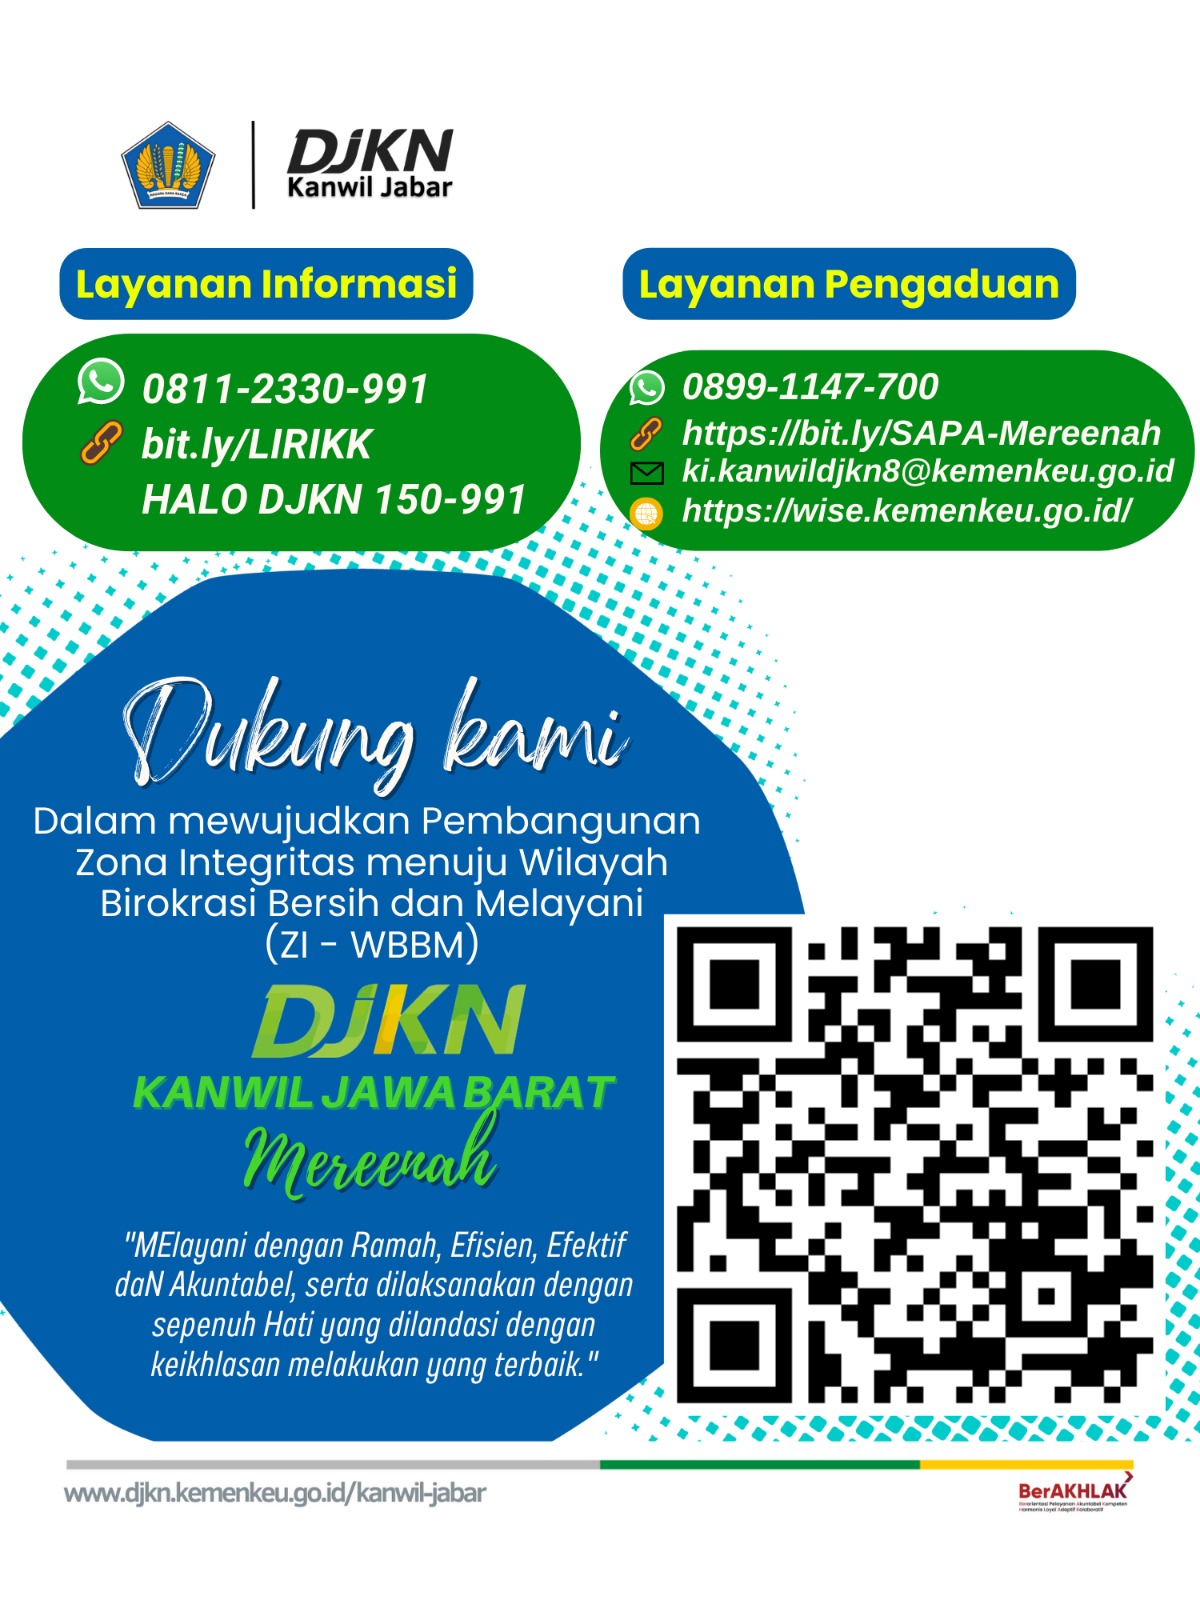 Layanan Virtual Kanwil DJKN Jawa Barat Melalui Chat Whatsapp